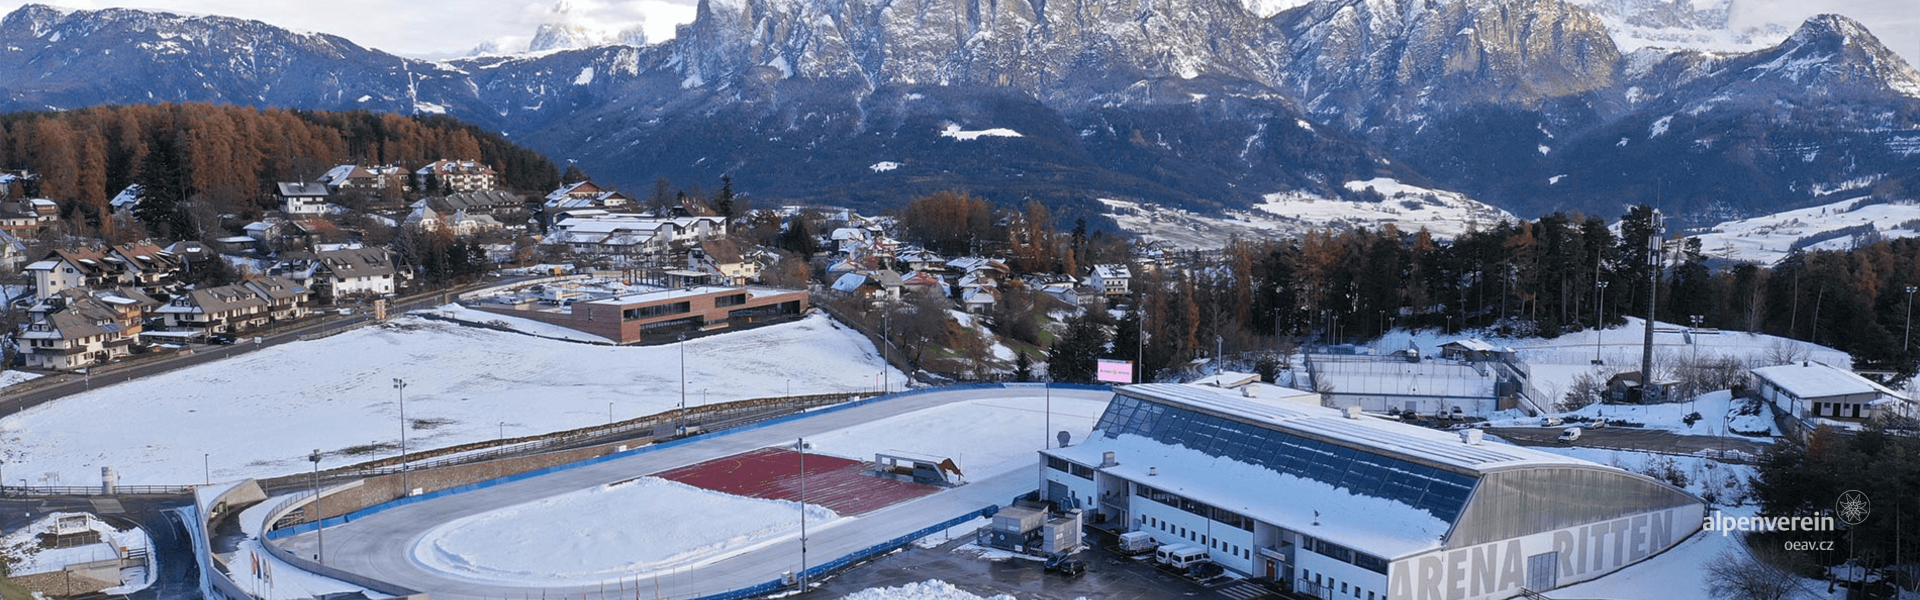 Alpenverein OEAV.CZ Collalbo